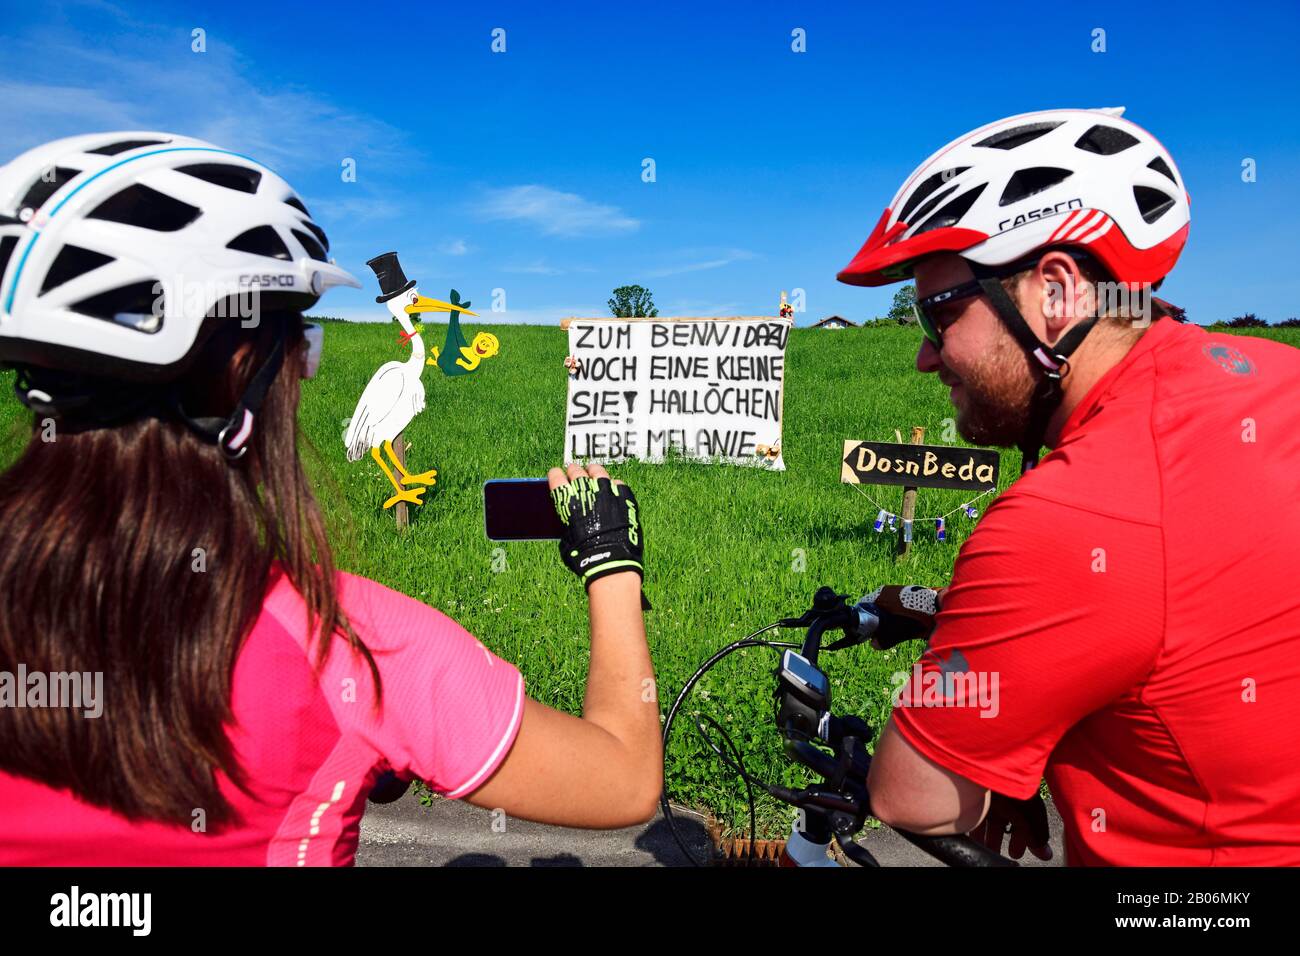 Les cyclistes photographiant des rangots Et des banderoles En tant que bienvenue pour un nouveau-né, Seeham, Salzbourg Lakeland, Salzburger Land, Autriche Banque D'Images